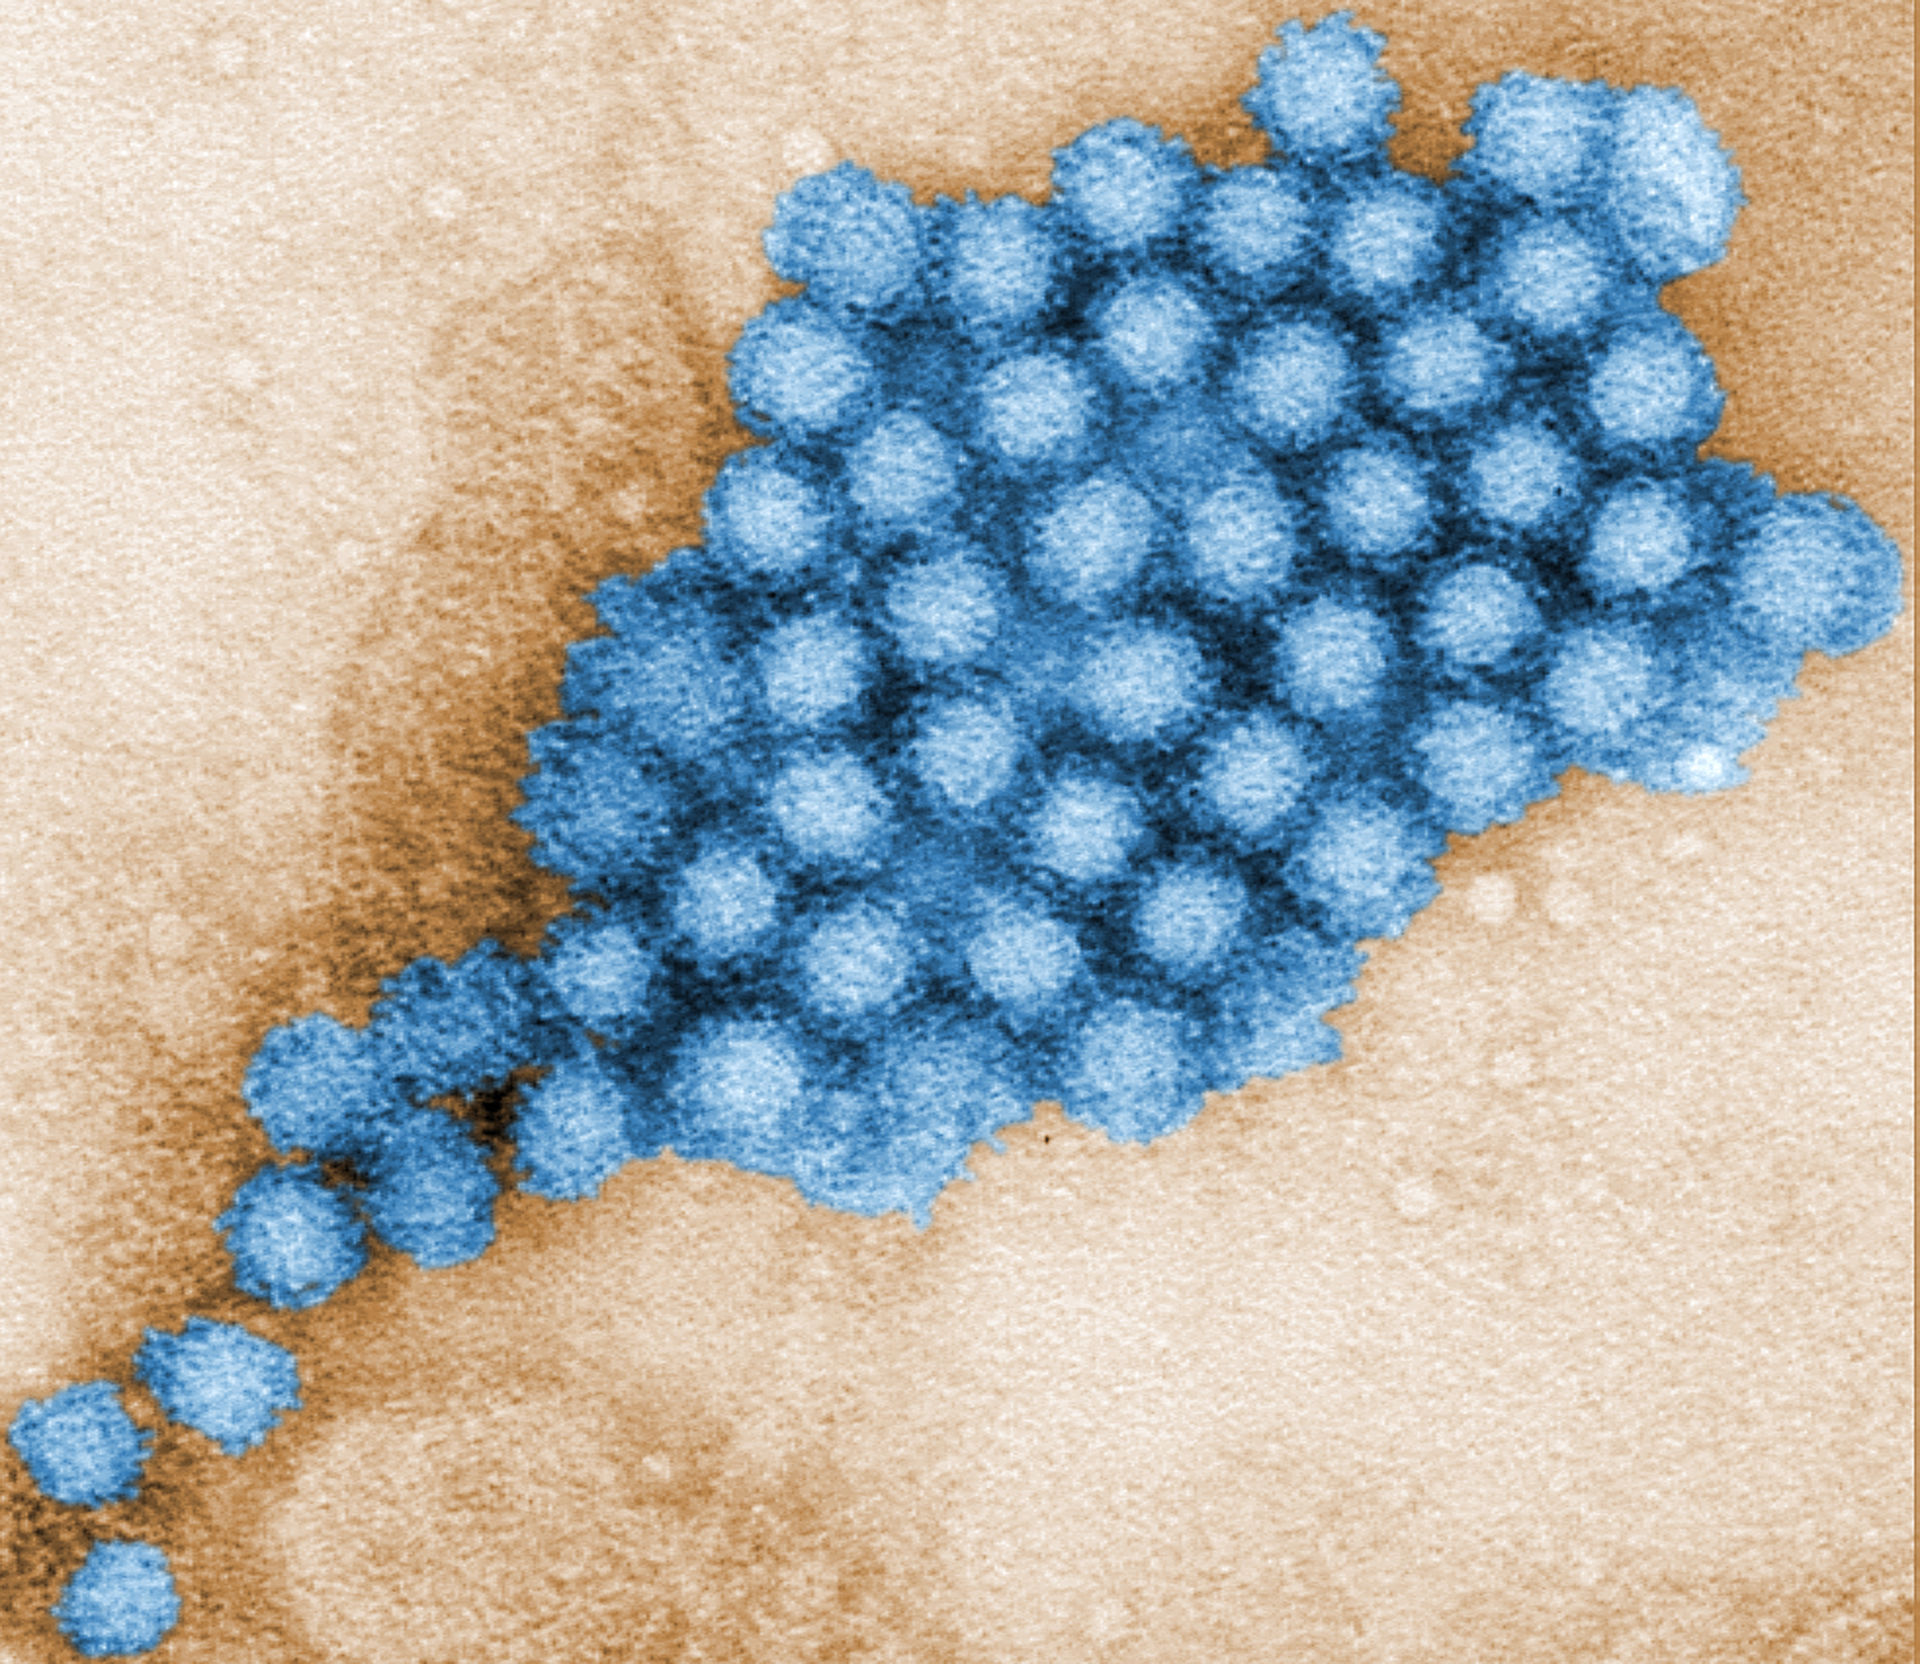 Norovirus (TEM, colorized) 2